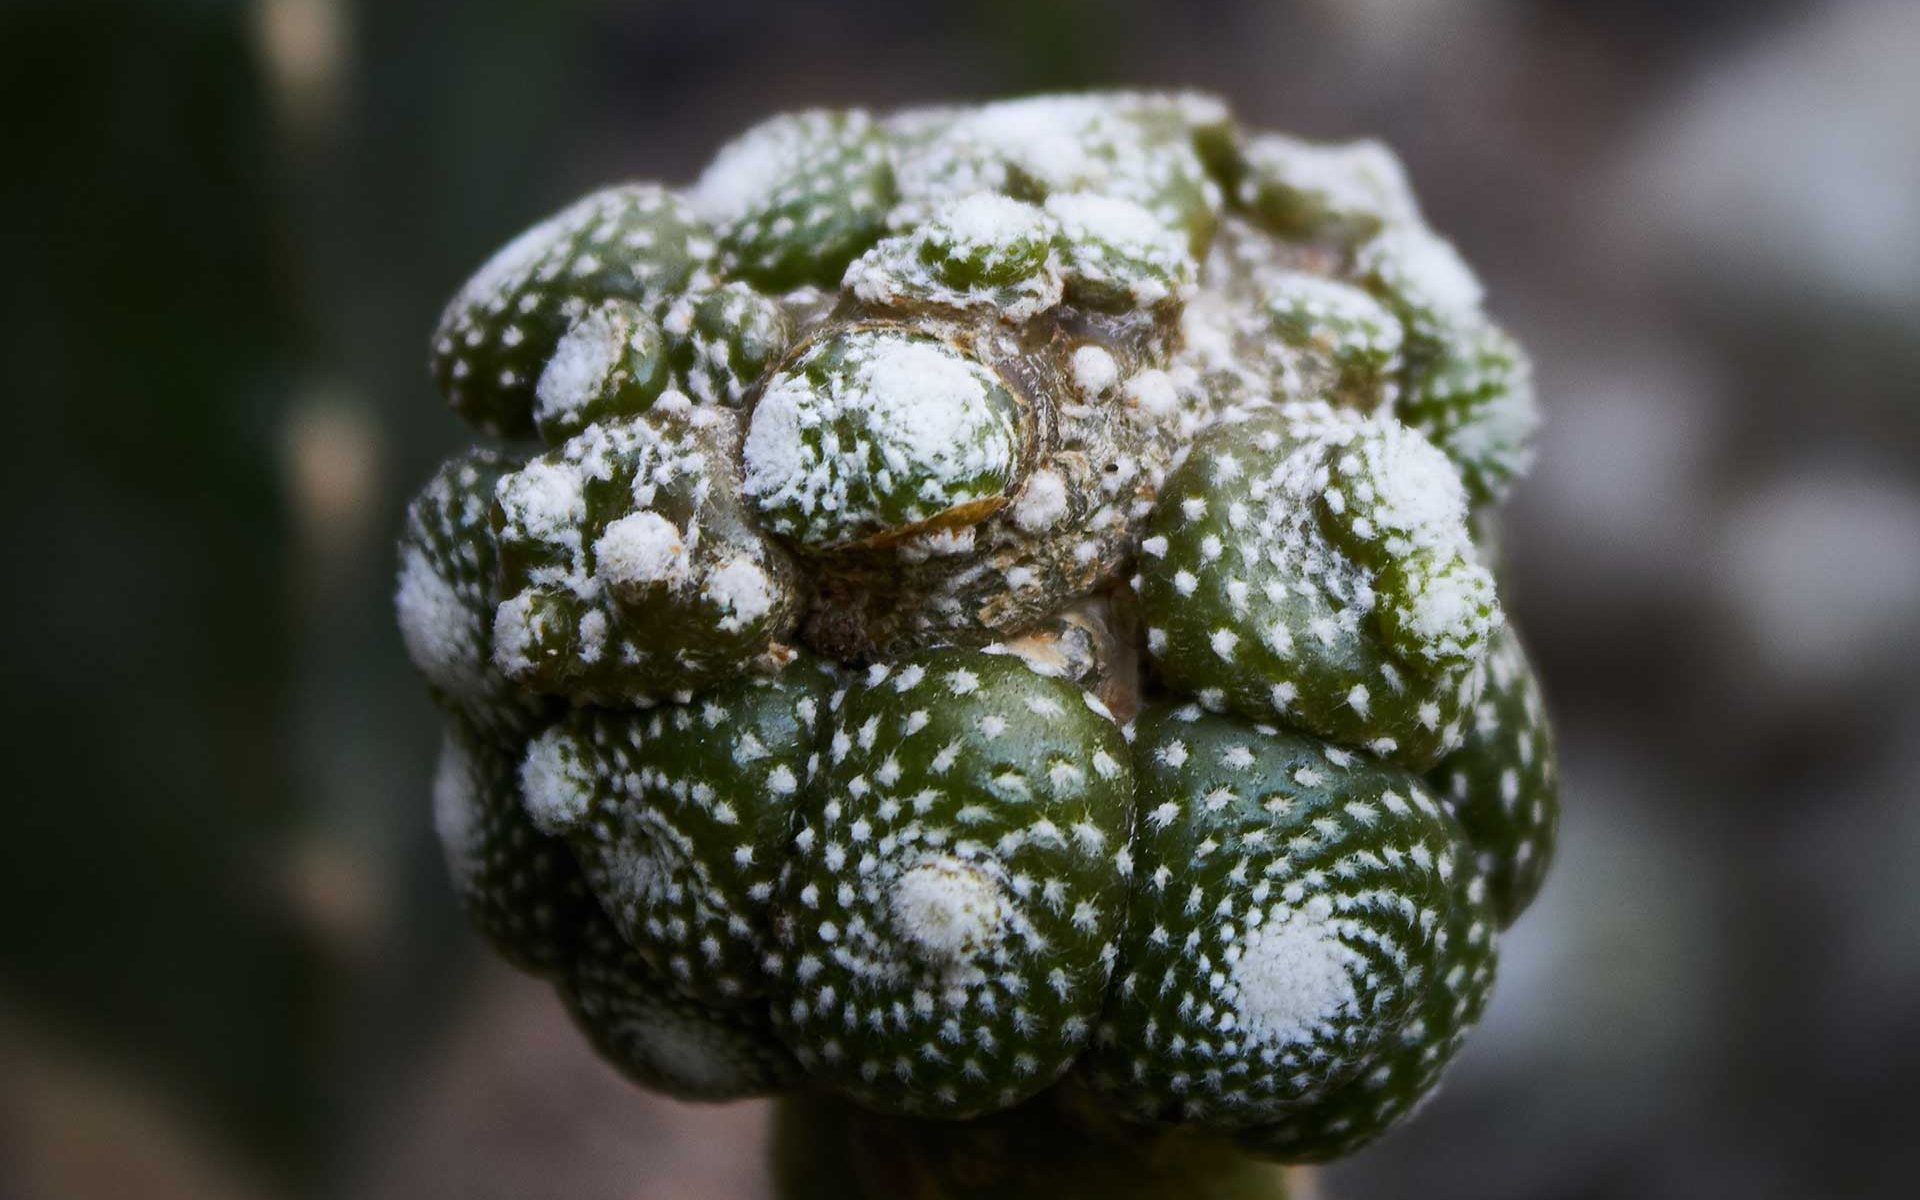 Vista de una pequeña colonia del cactus Blossfeldia liliputana (injerto)